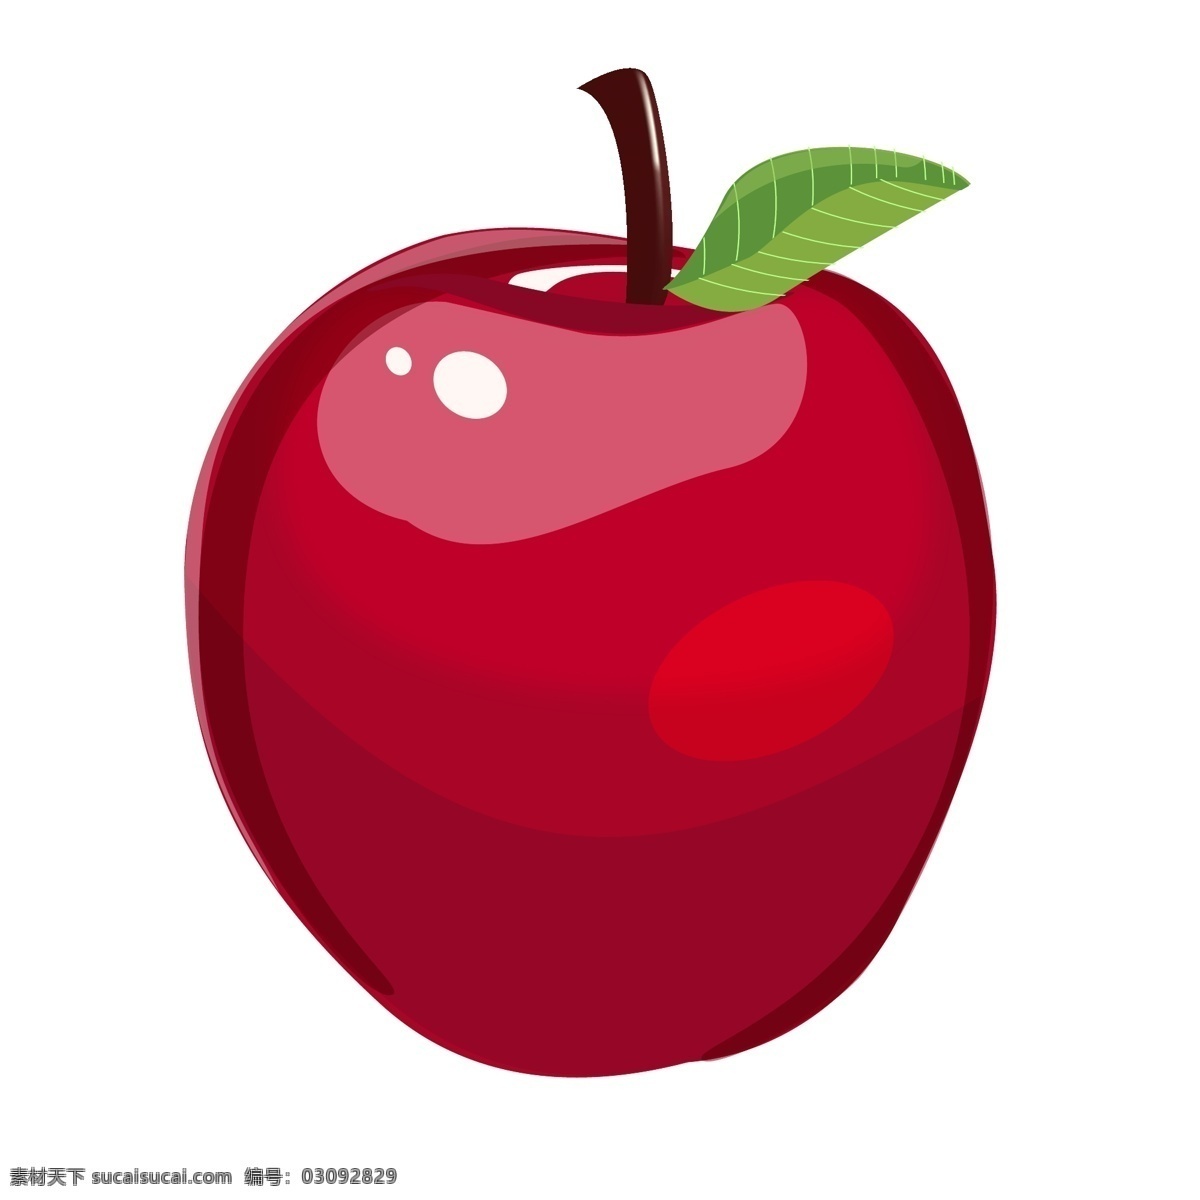 手绘 水晶 质感 平安夜 红苹果 商用 元素 节日 感恩节 苹果 红色 装饰 光滑 细腻 新年 喜气 甜 水果 物品 苹果派 原料 天然